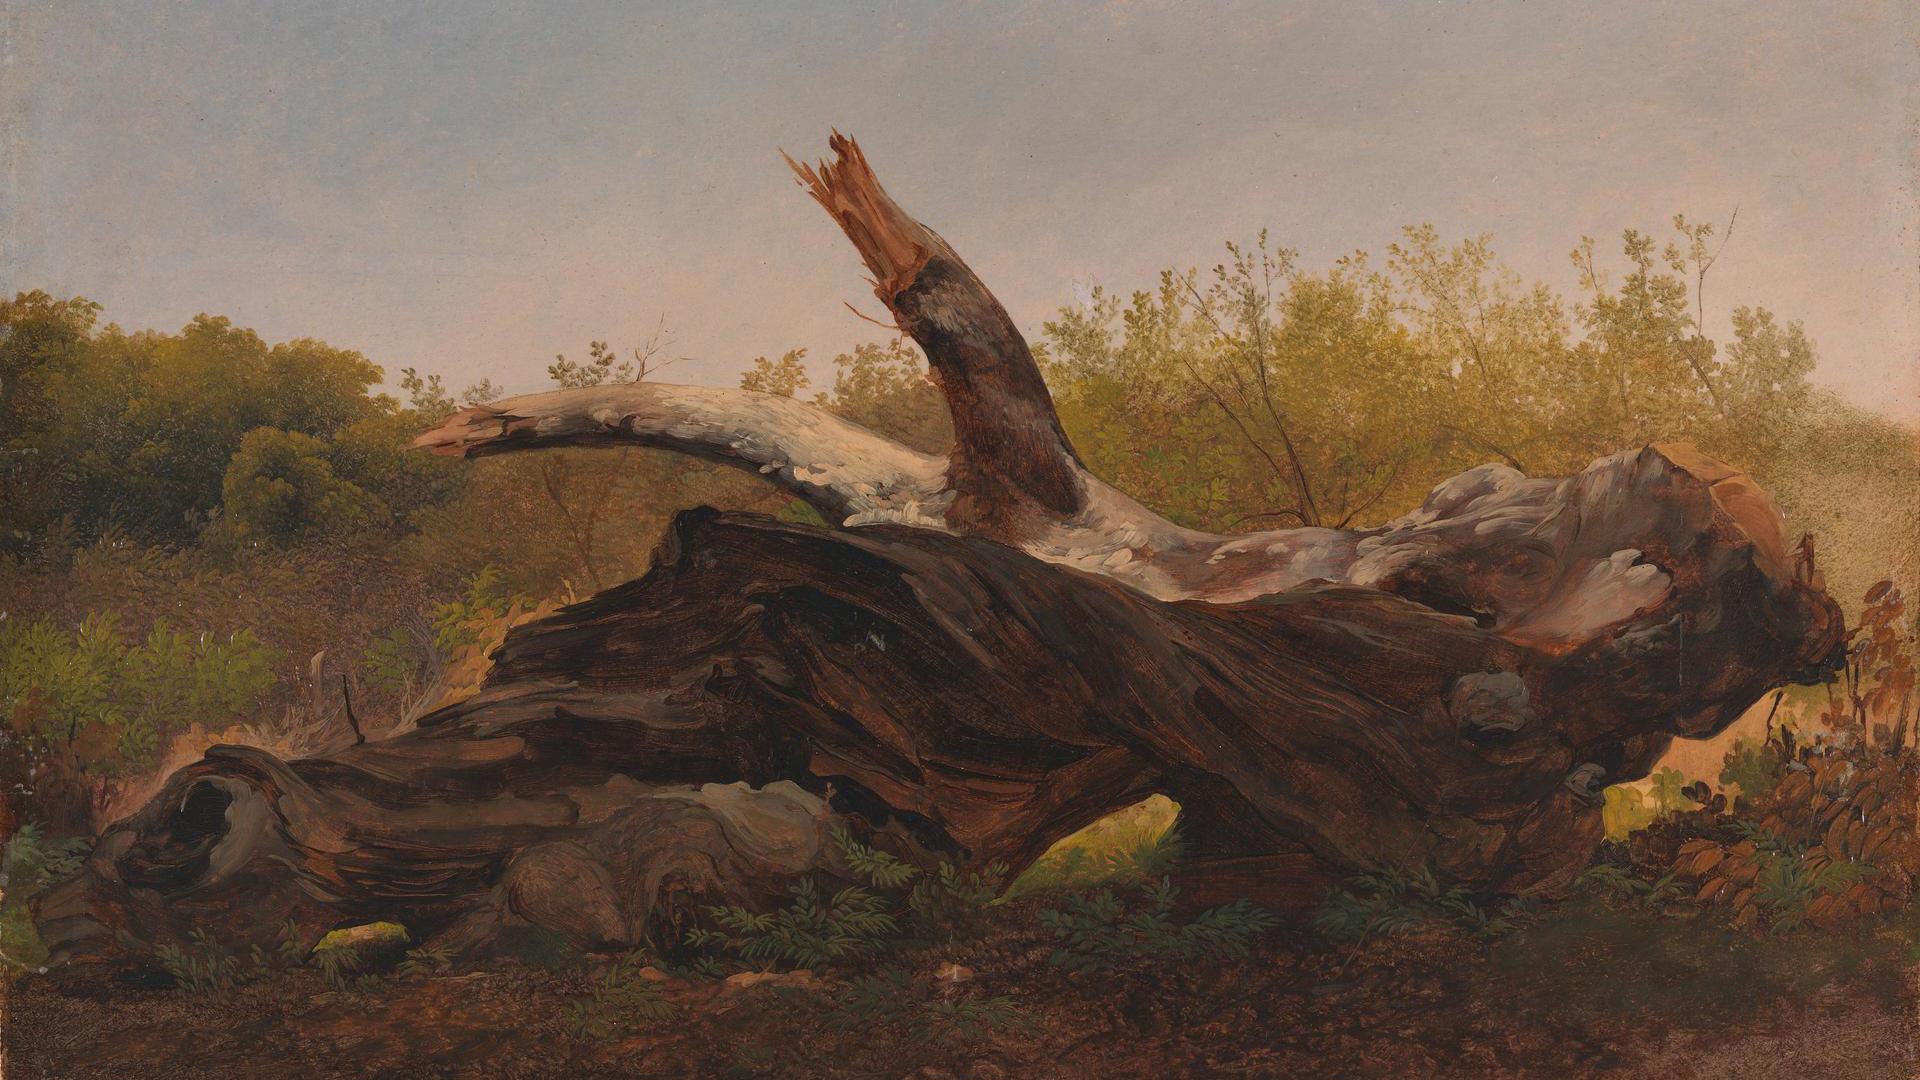 A Fallen Tree Trunk by Giovanni-Battista Camuccini